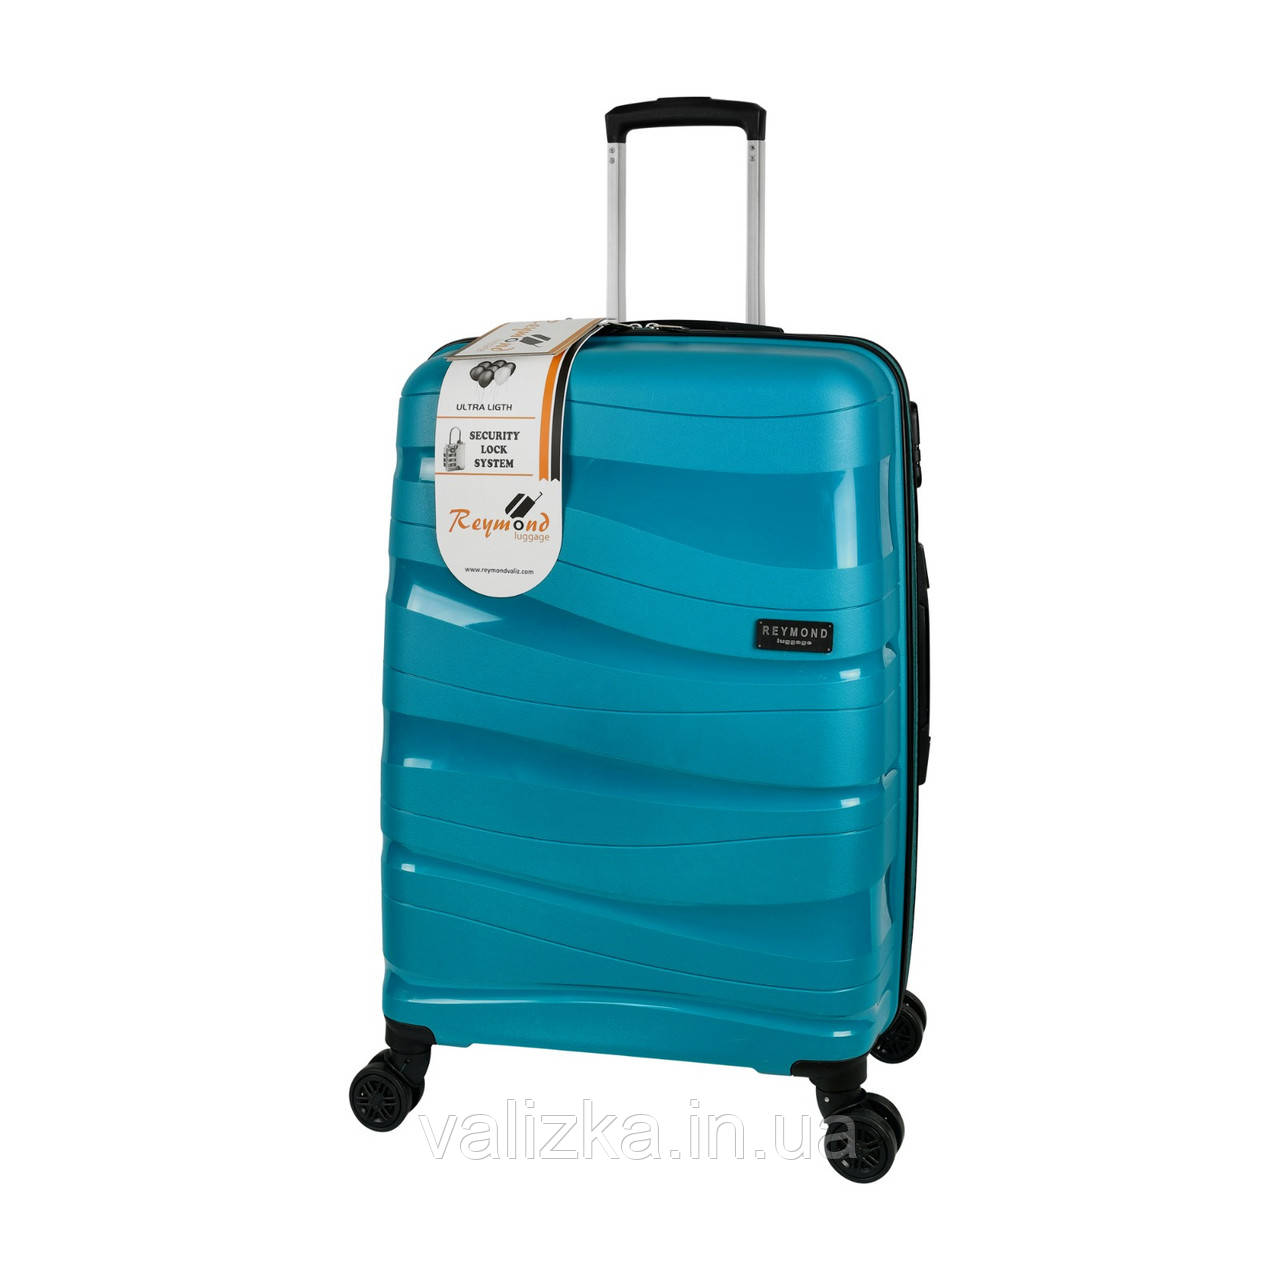 Прочный пластиковый чемодан средний из полипропилена синий